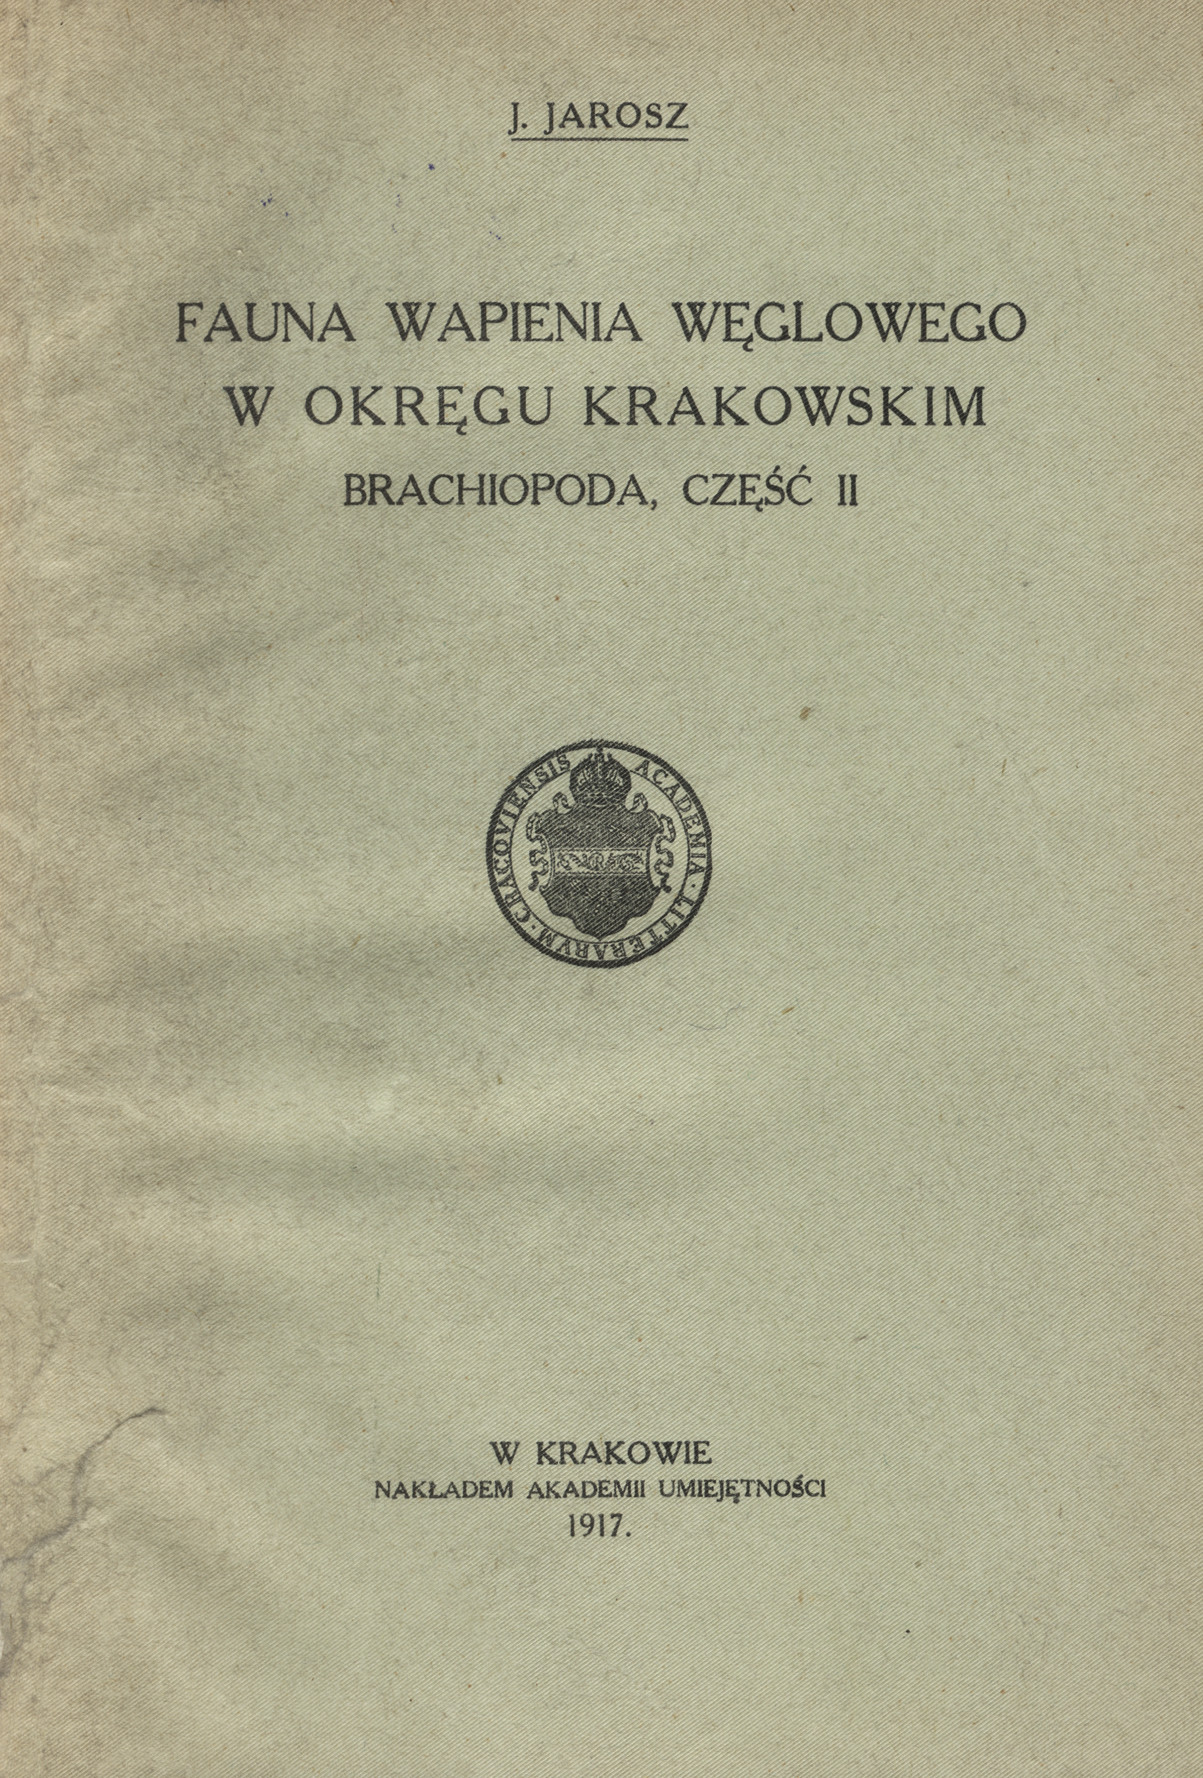 Fauna wapienia węglowego w okręgu krakowskim. Cz. 2, Brachiopoda